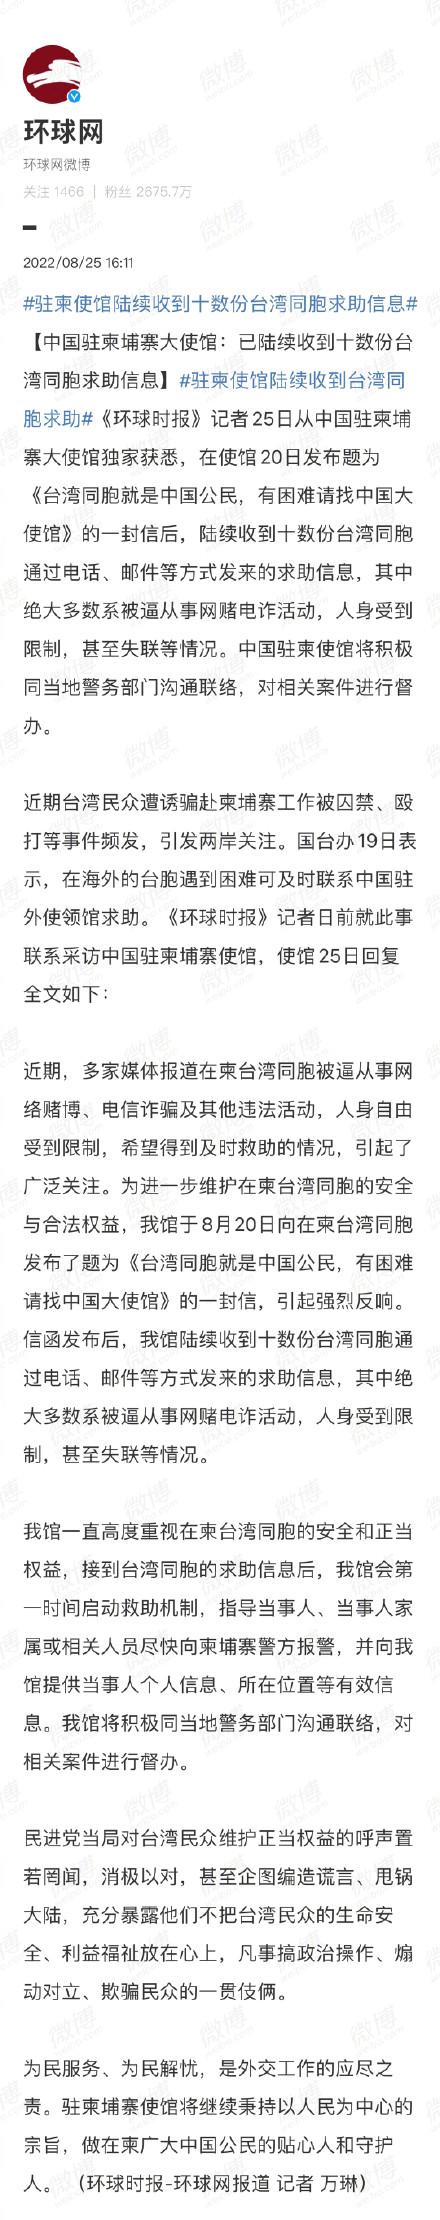 刘畊宏回应卖假燕窝 向消费者道歉 现在团队更加严谨